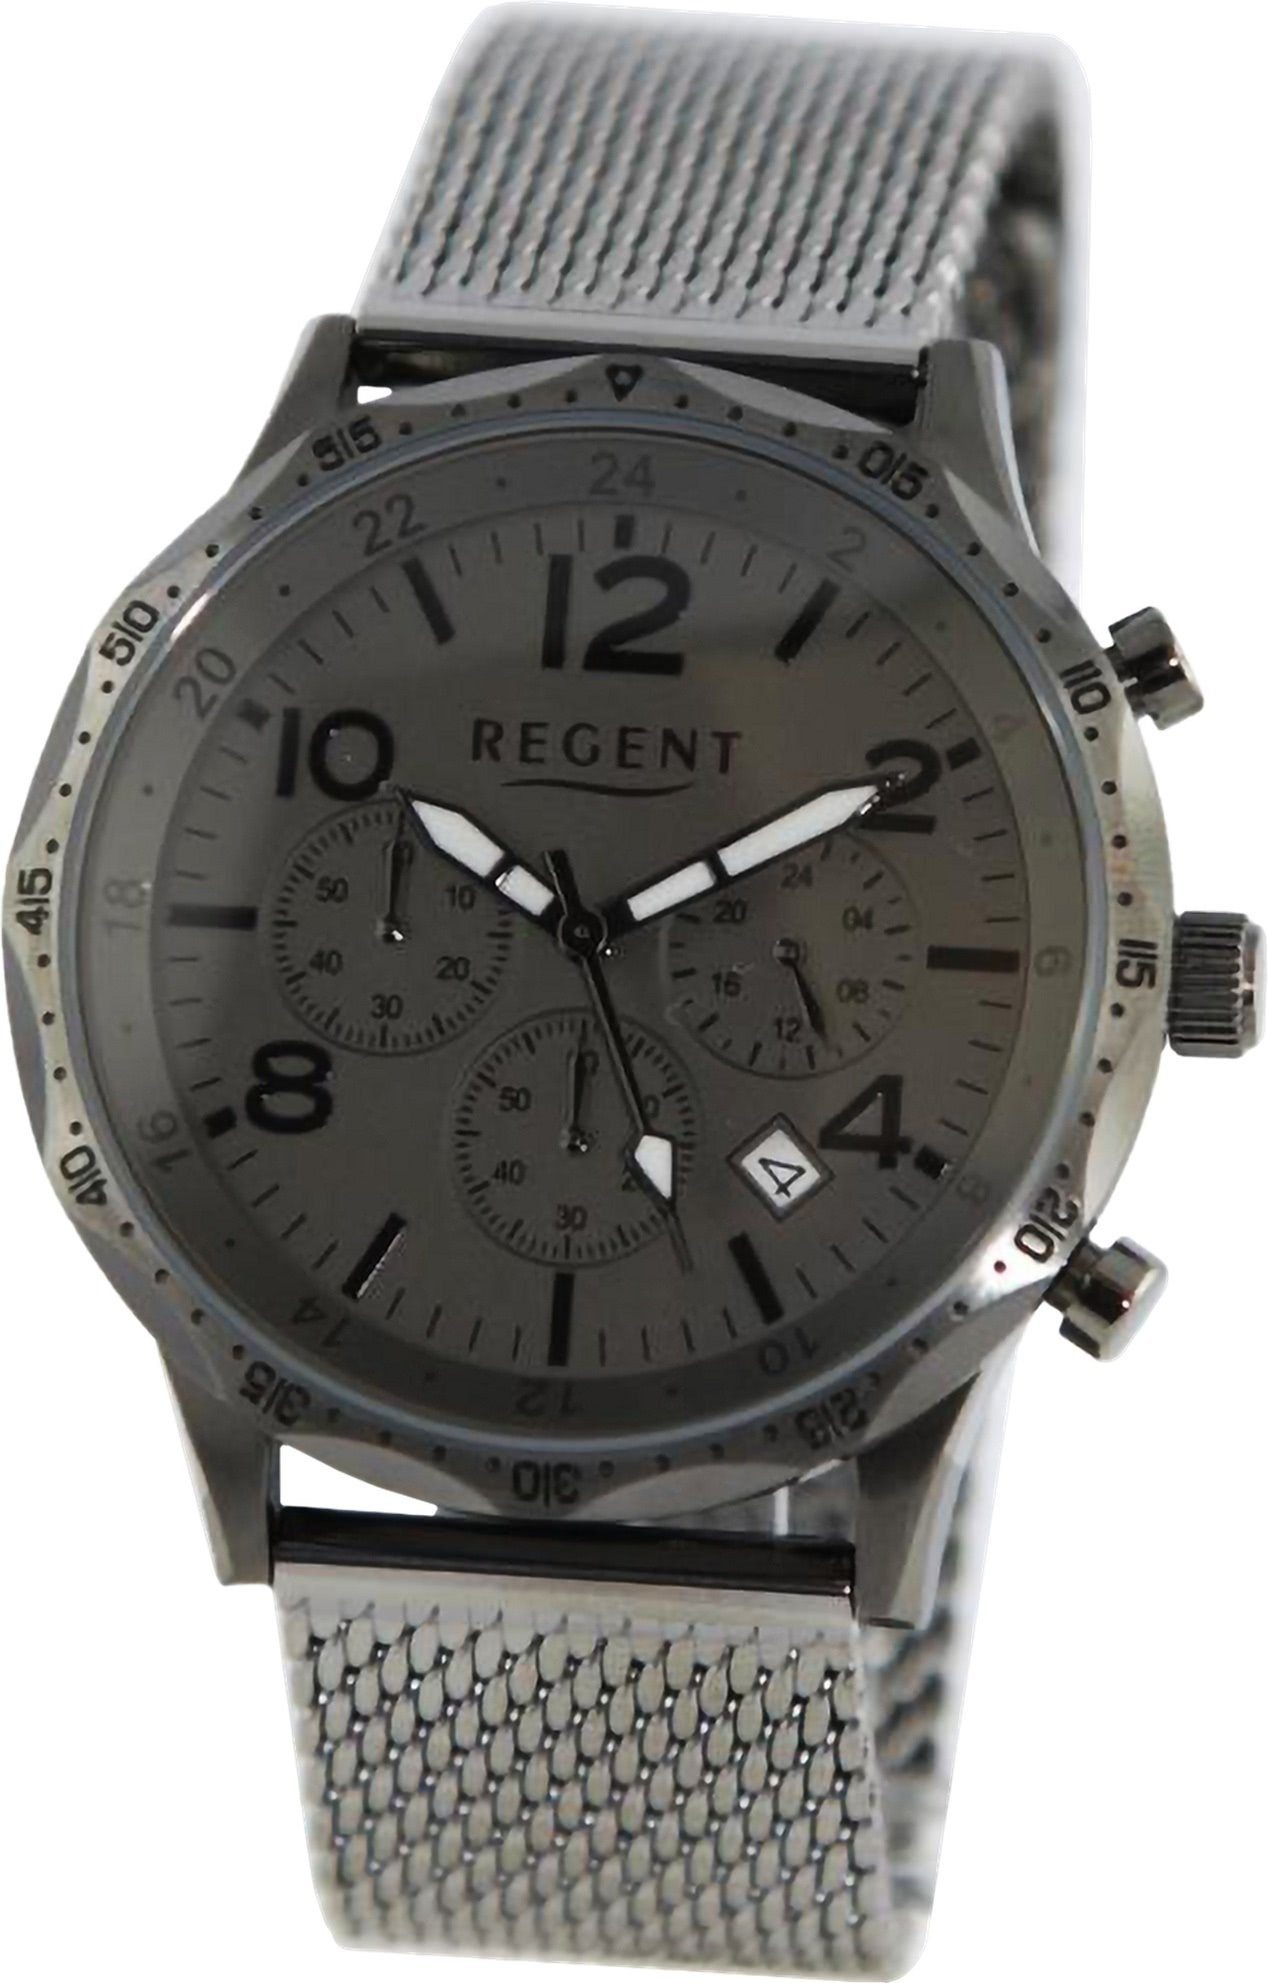 Herren Armbanduhr Herren extra (ca. 44mm), Metallarmband, groß Regent Analog, Armbanduhr Regent Uhrzeit rund, Quarzuhr